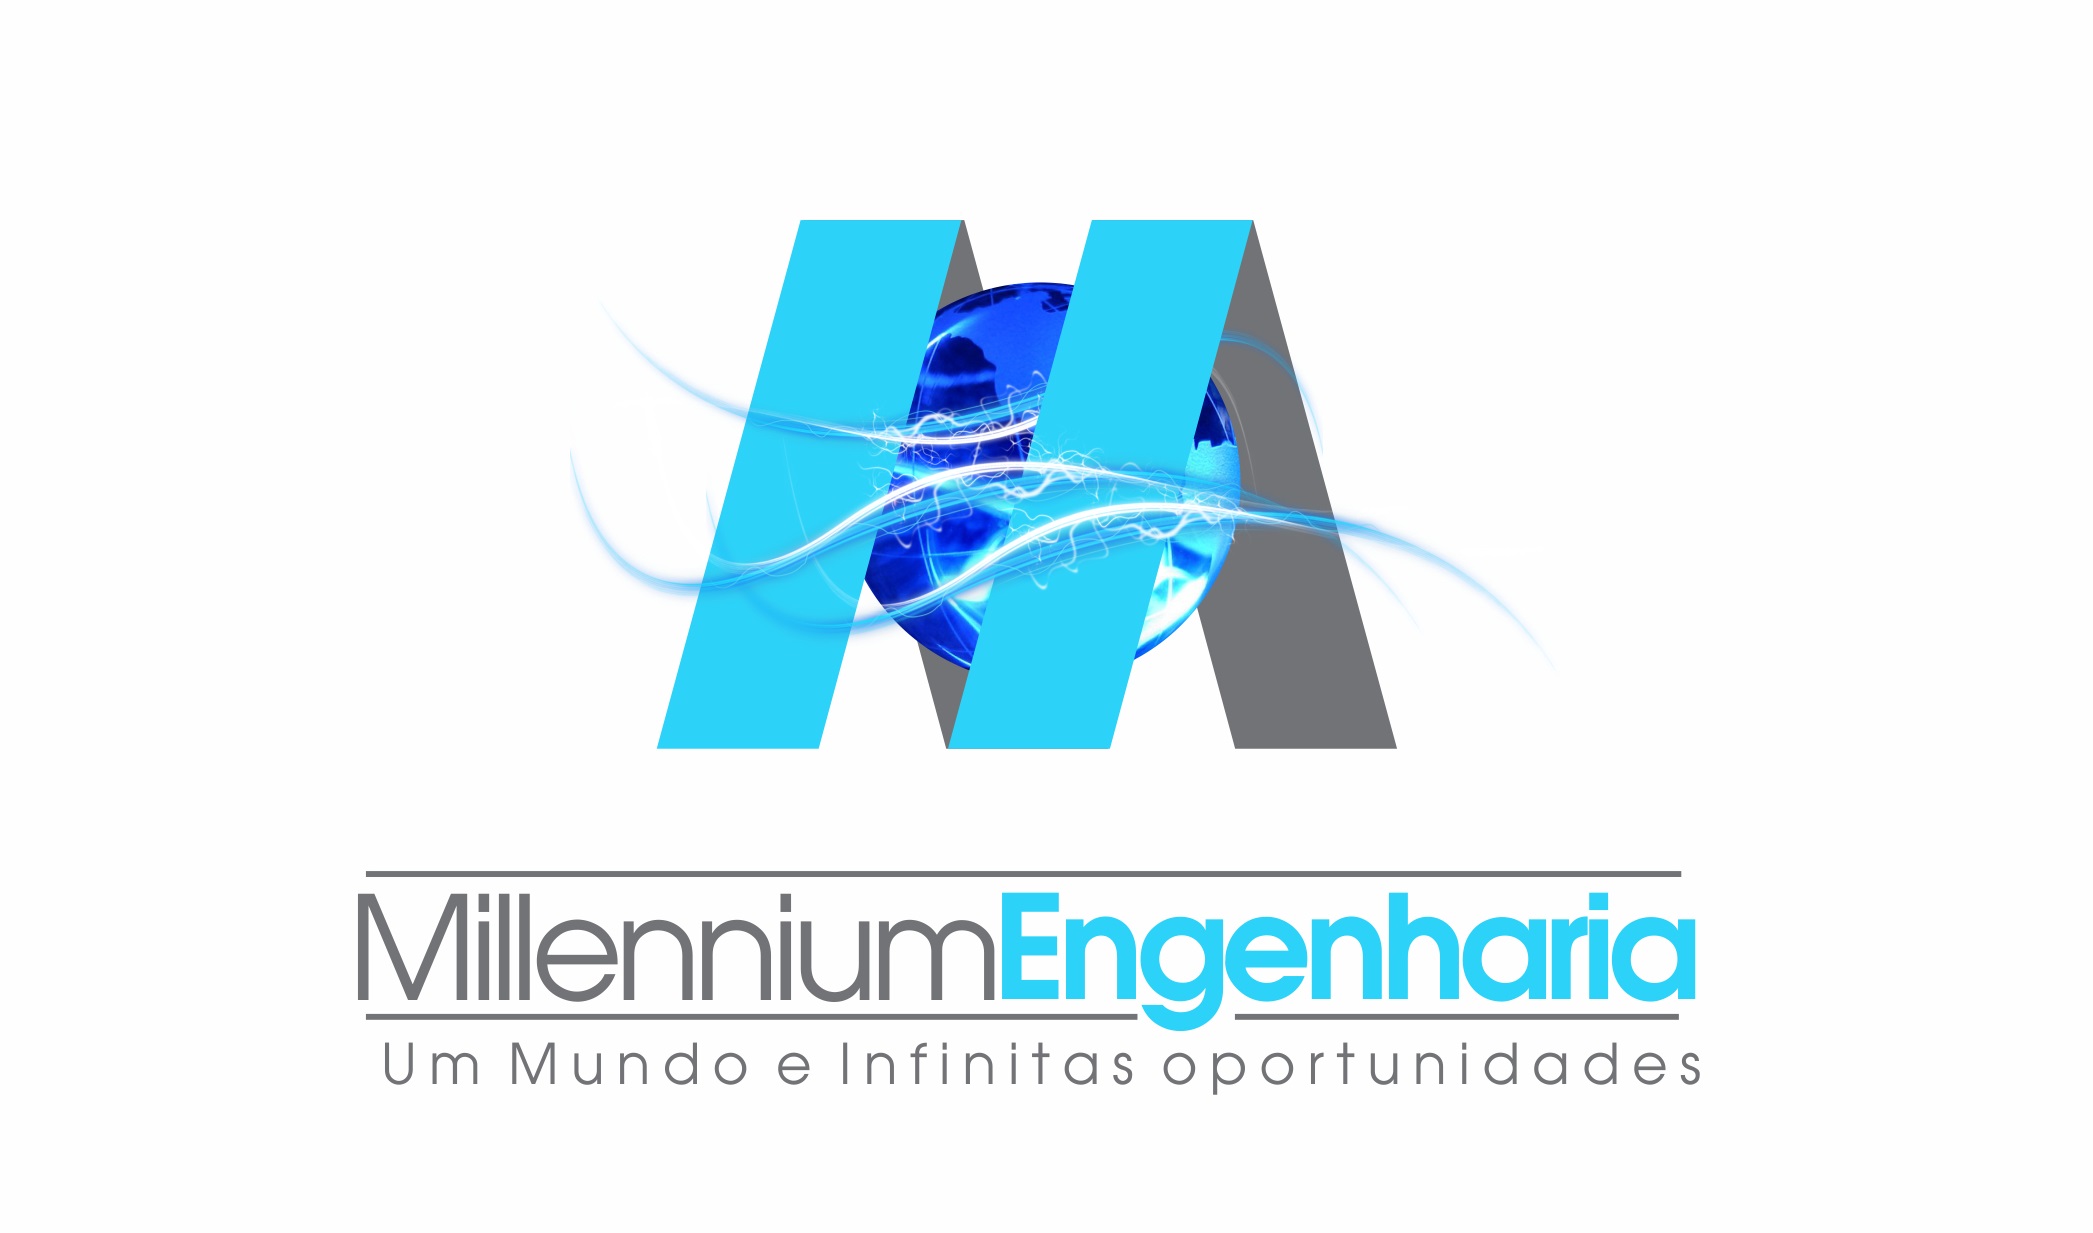 MILLENNIUM ENGENHARIA - Construção - Engenharia - Empresas - Teresina, PI